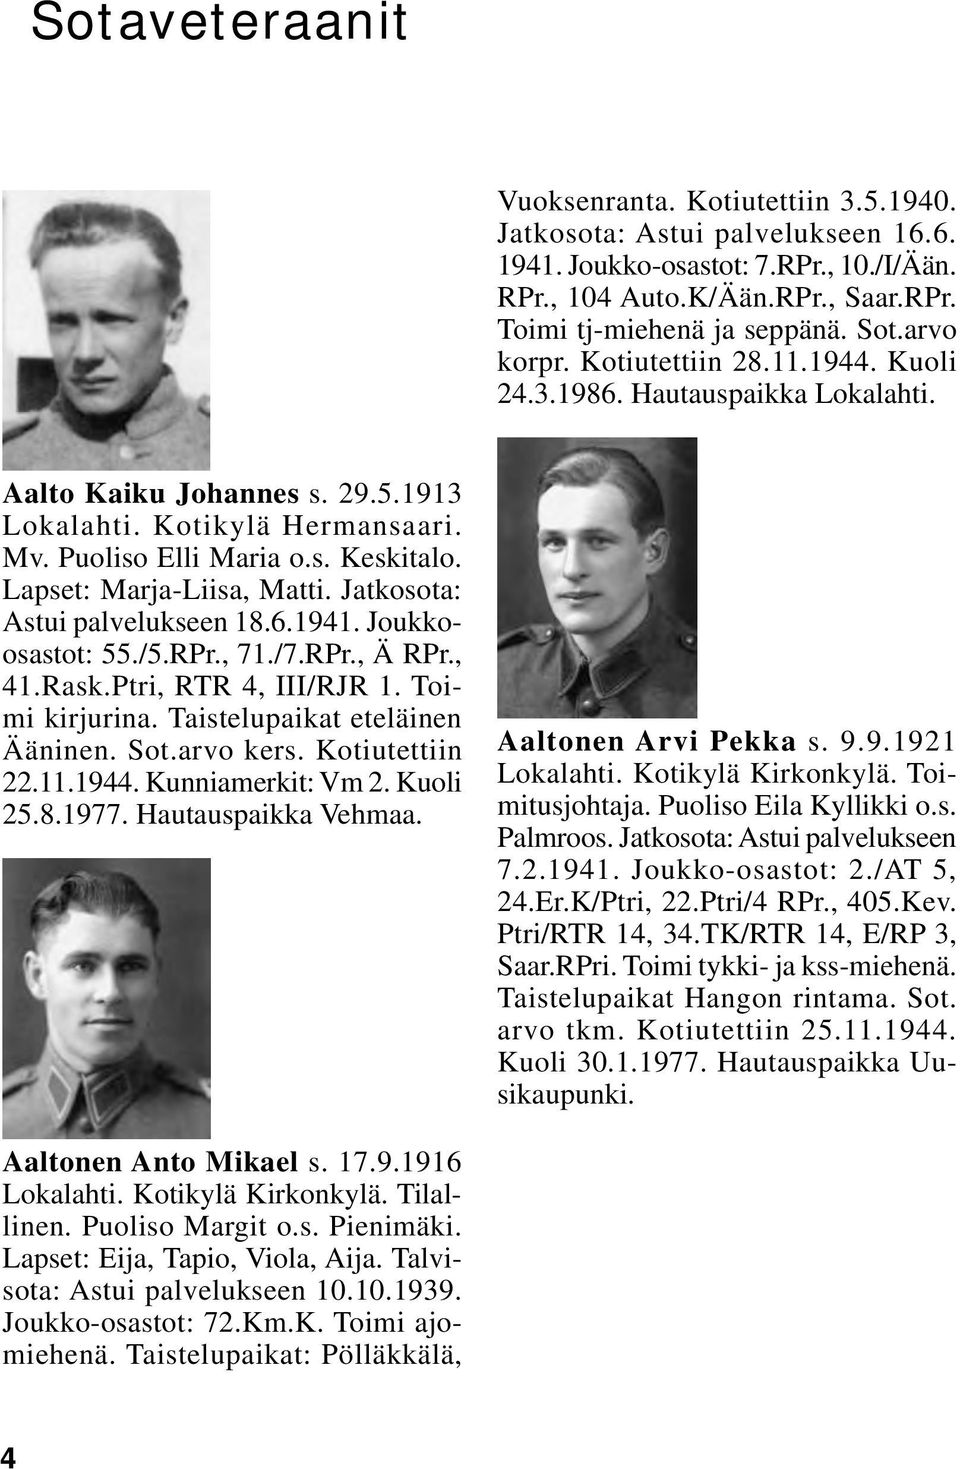 Jatkosota: Astui palvelukseen 18.6.1941. Joukkoosastot: 55./5.RPr., 71./7.RPr., Ä RPr., 41.Rask.Ptri, RTR 4, III/RJR 1. Toimi kirjurina. Taistelupaikat eteläinen Ääninen. Sot.arvo kers.